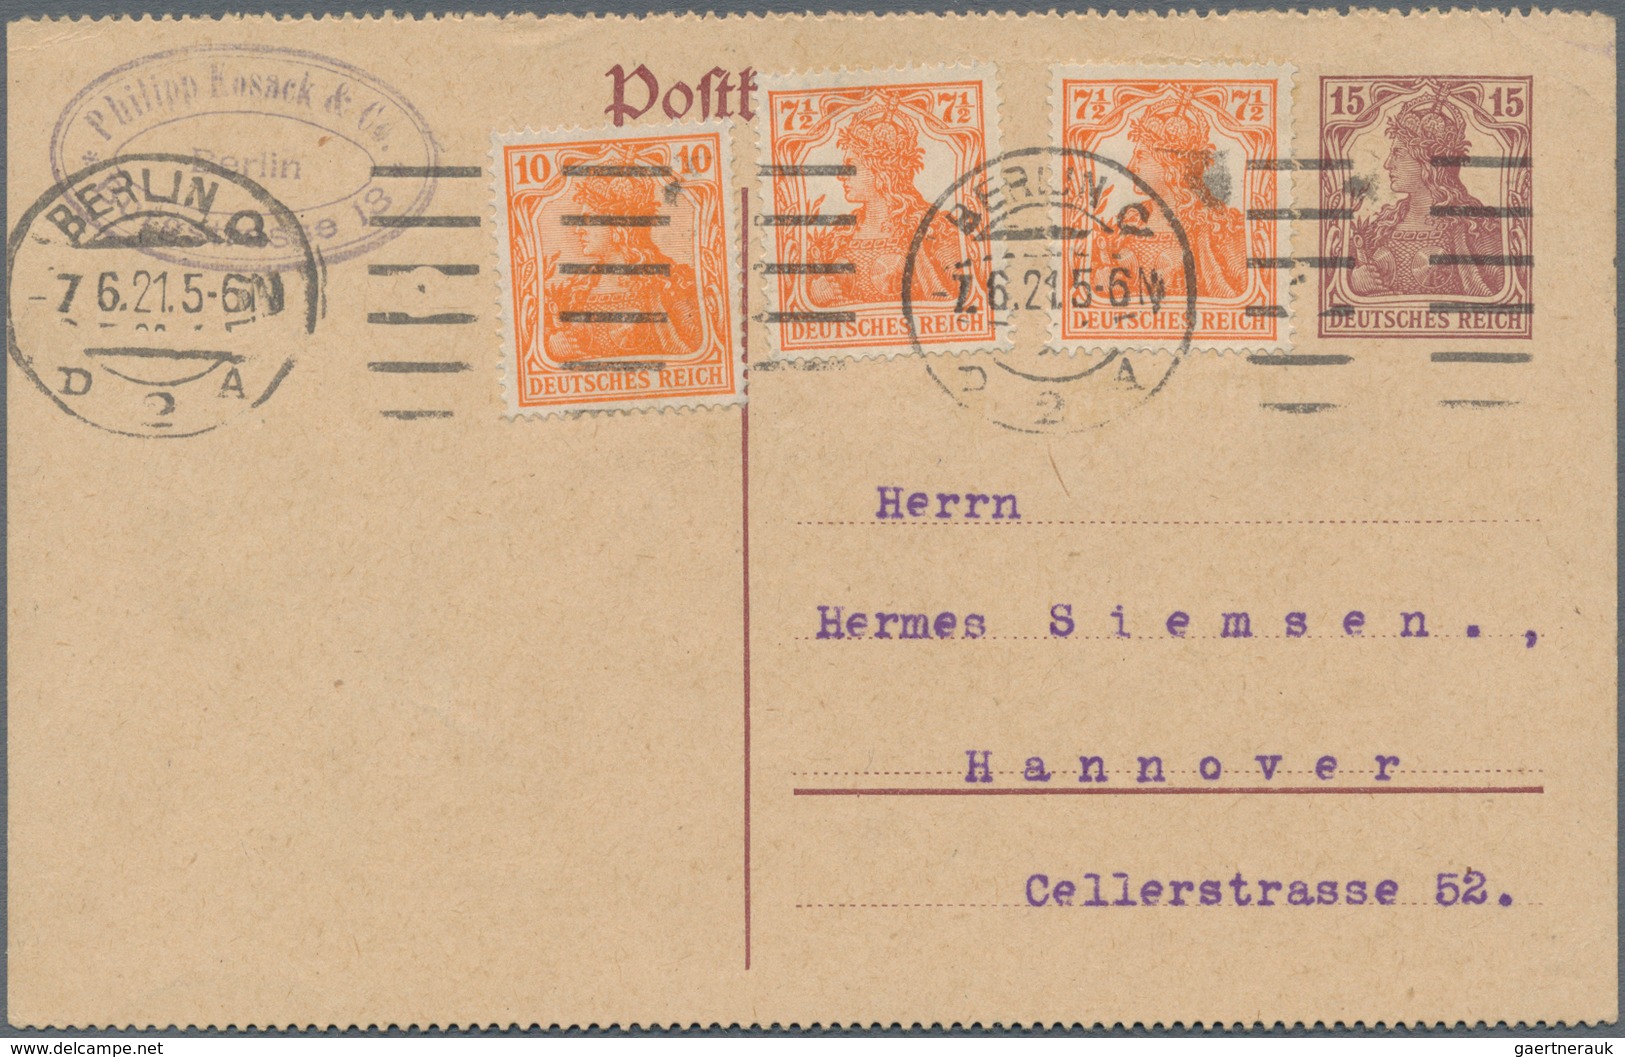 Deutsches Reich - Ganzsachen: 1872-1945, umfangreiche Sammlung mit vielen tausend gebrauchten und un